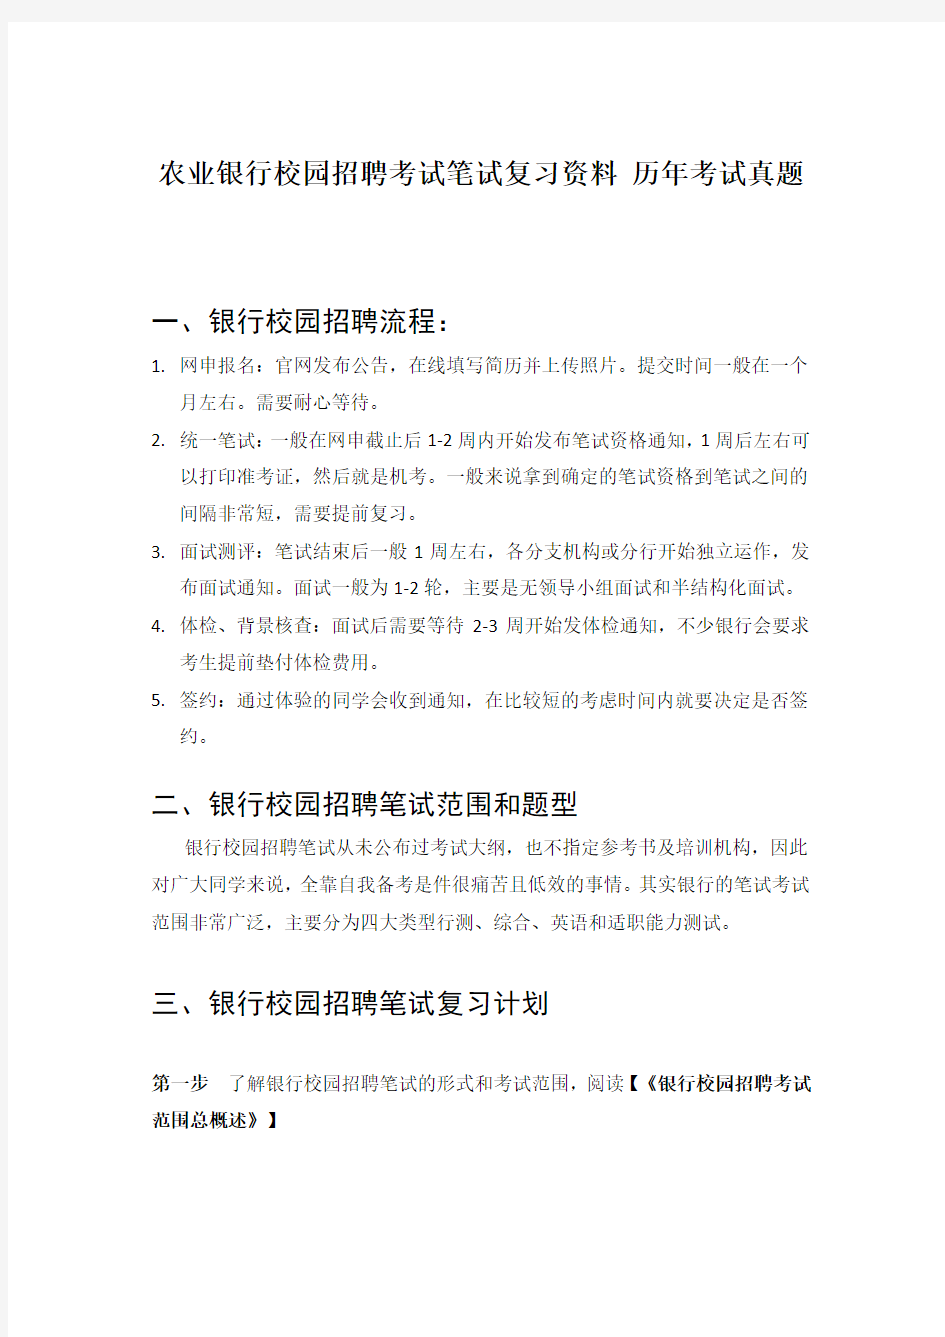 中国农业银行招聘考试笔试题目试卷  历年考试真题